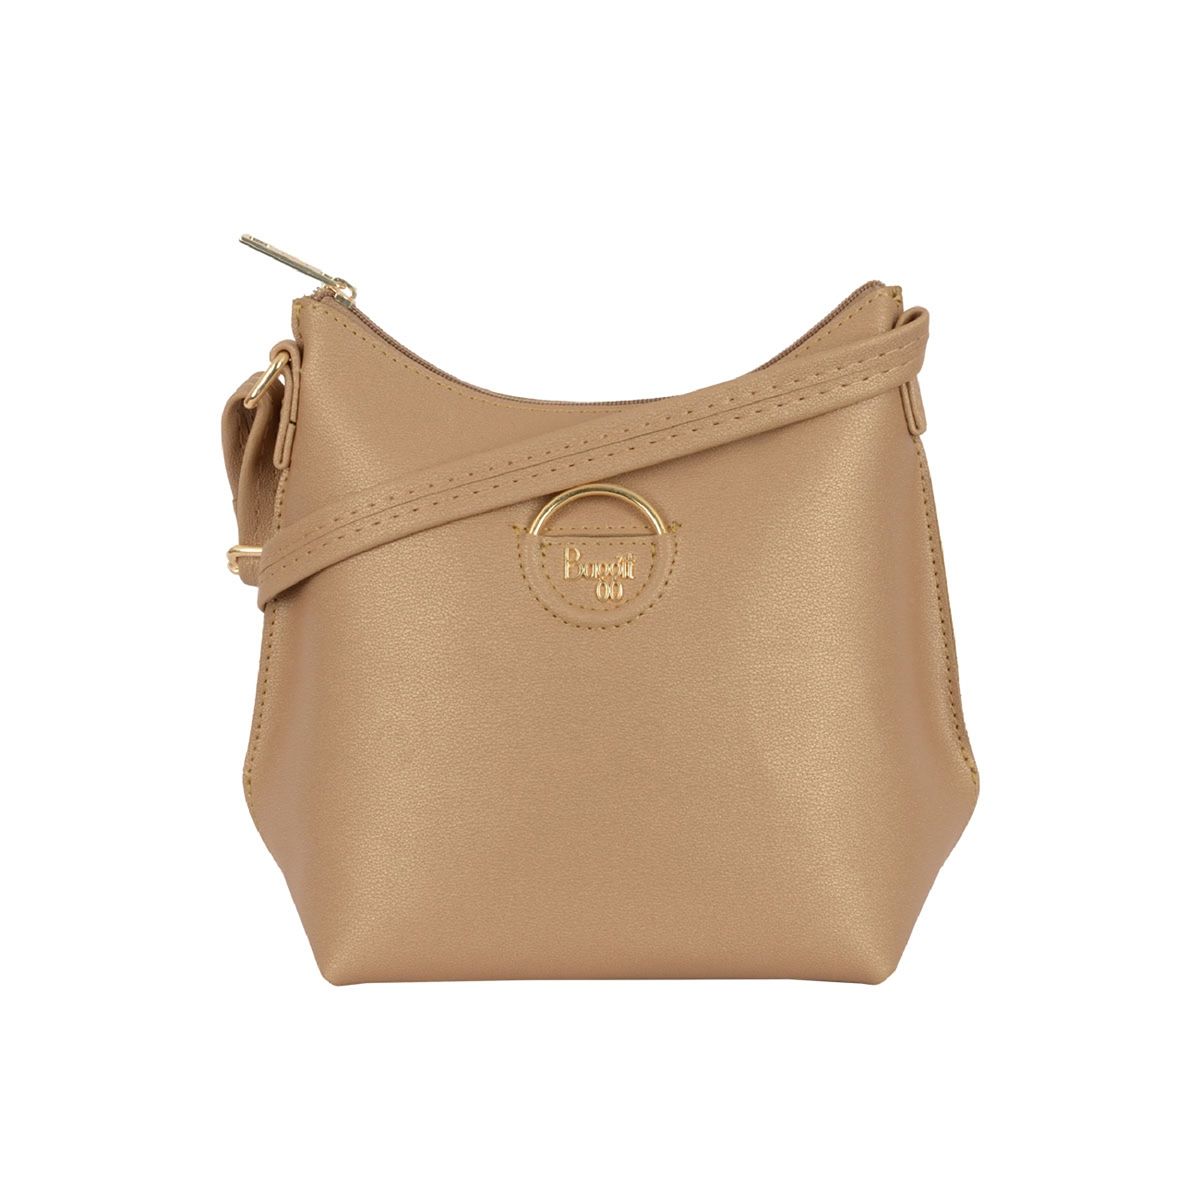 Buy Baggit Women Brown Sling Bag BROWN Online @ Best Price in